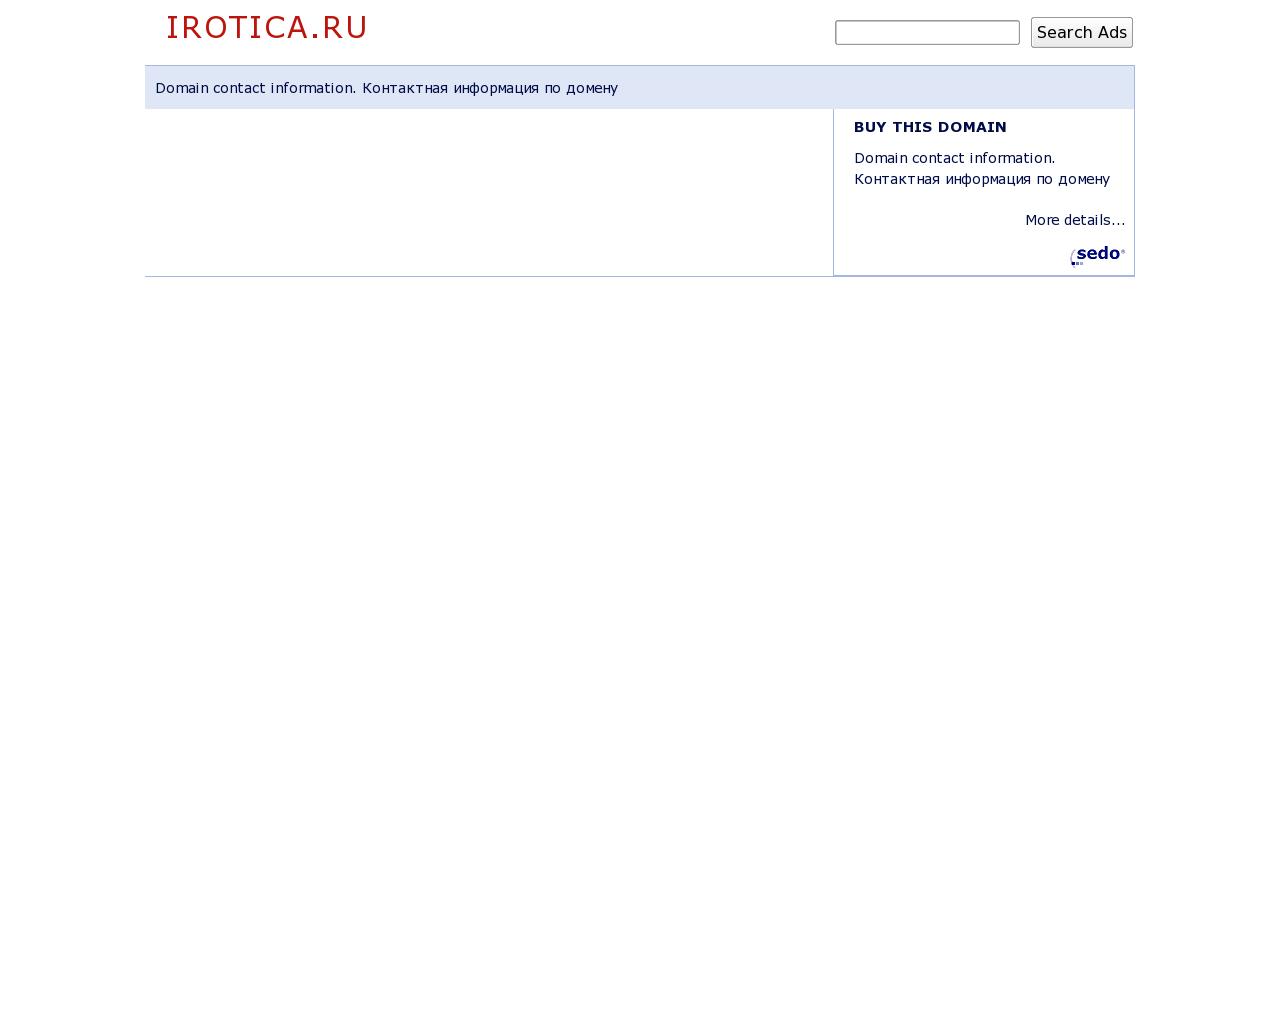 Изображение сайта irotica.ru в разрешении 1280x1024